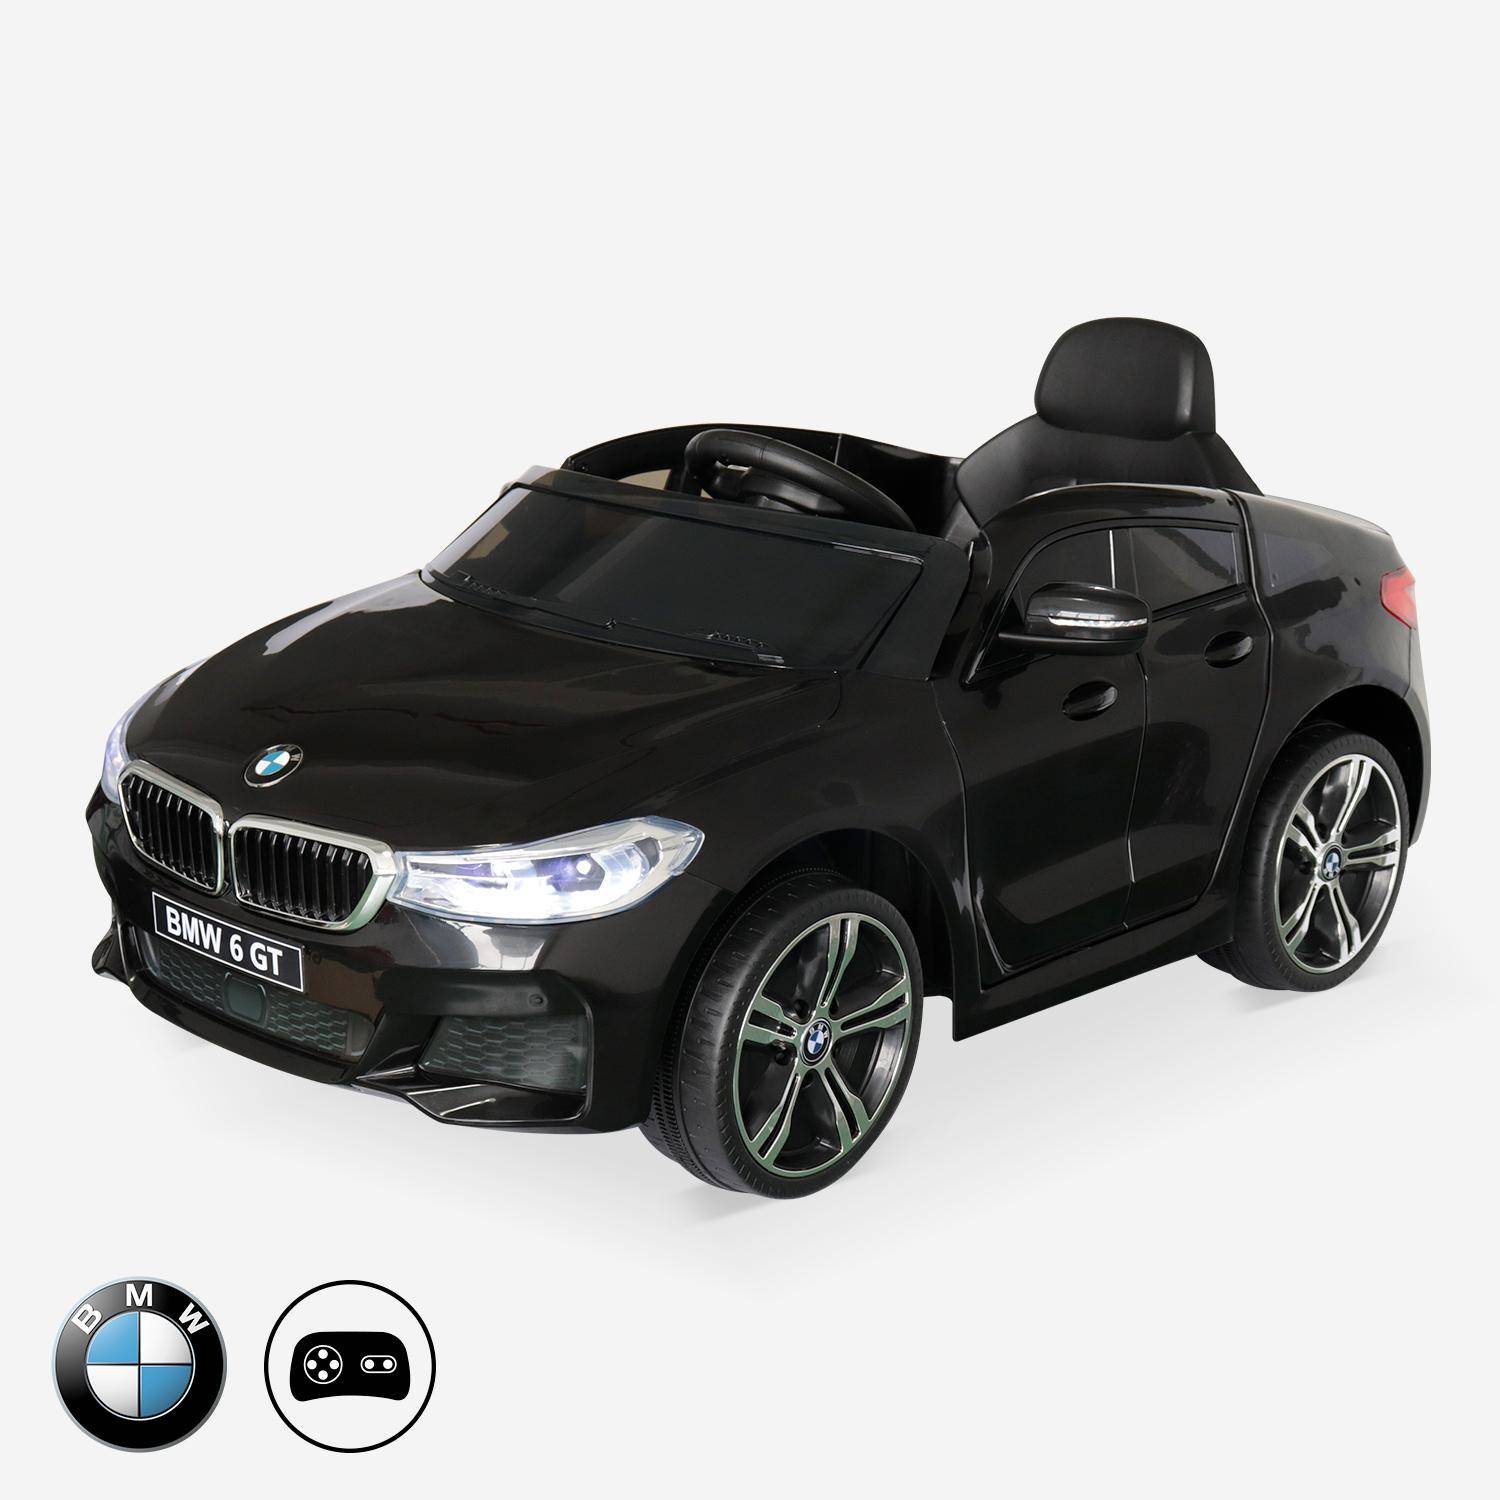 BMW GT6 Gran Turismo negro, coche eléctrico 12V, 1 plaza, descapotable para niños con autorradio y mando a distancia Photo1